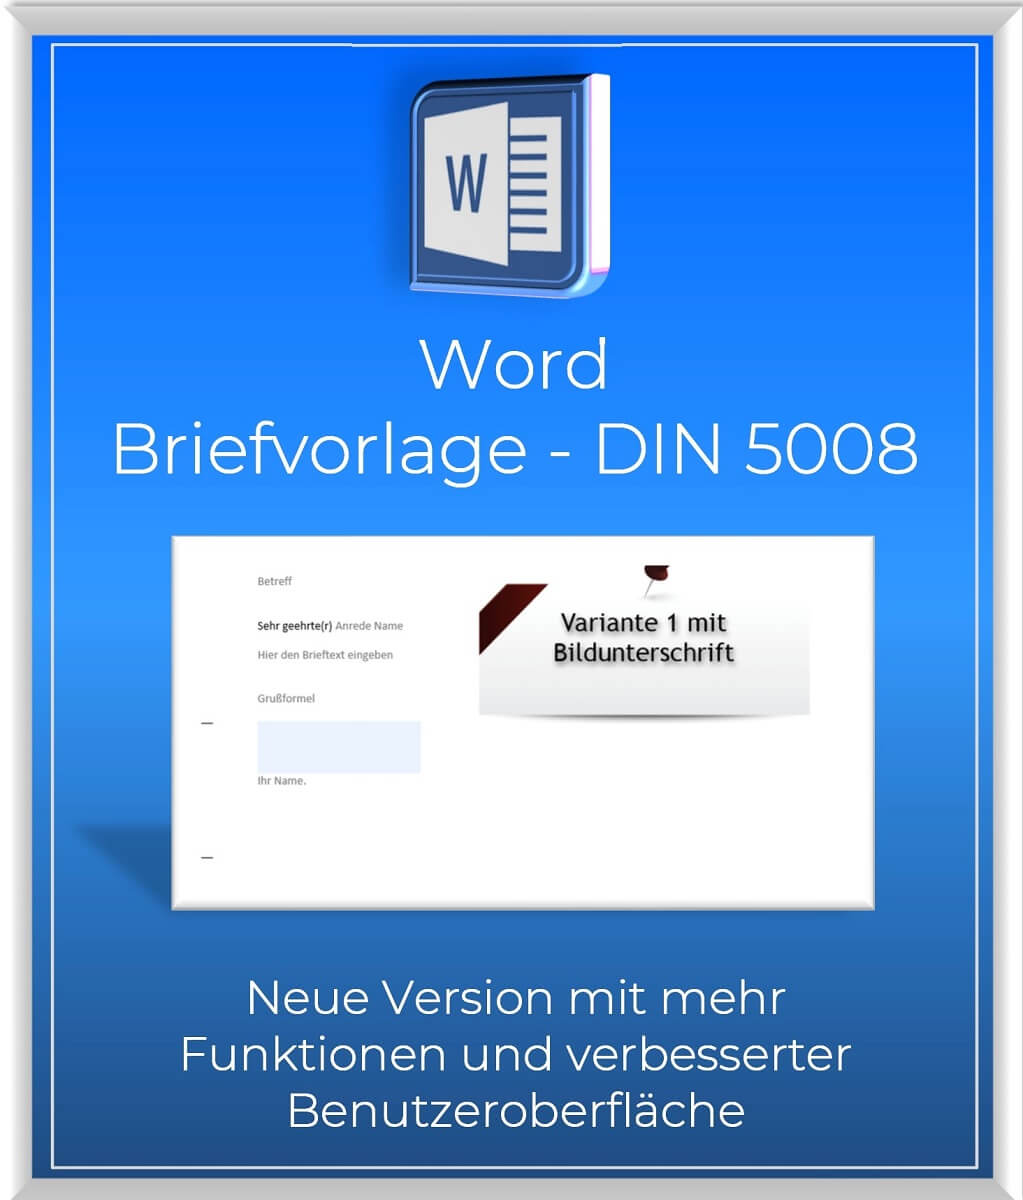 Word_Briefvorlage_DIN5008_Neue Version